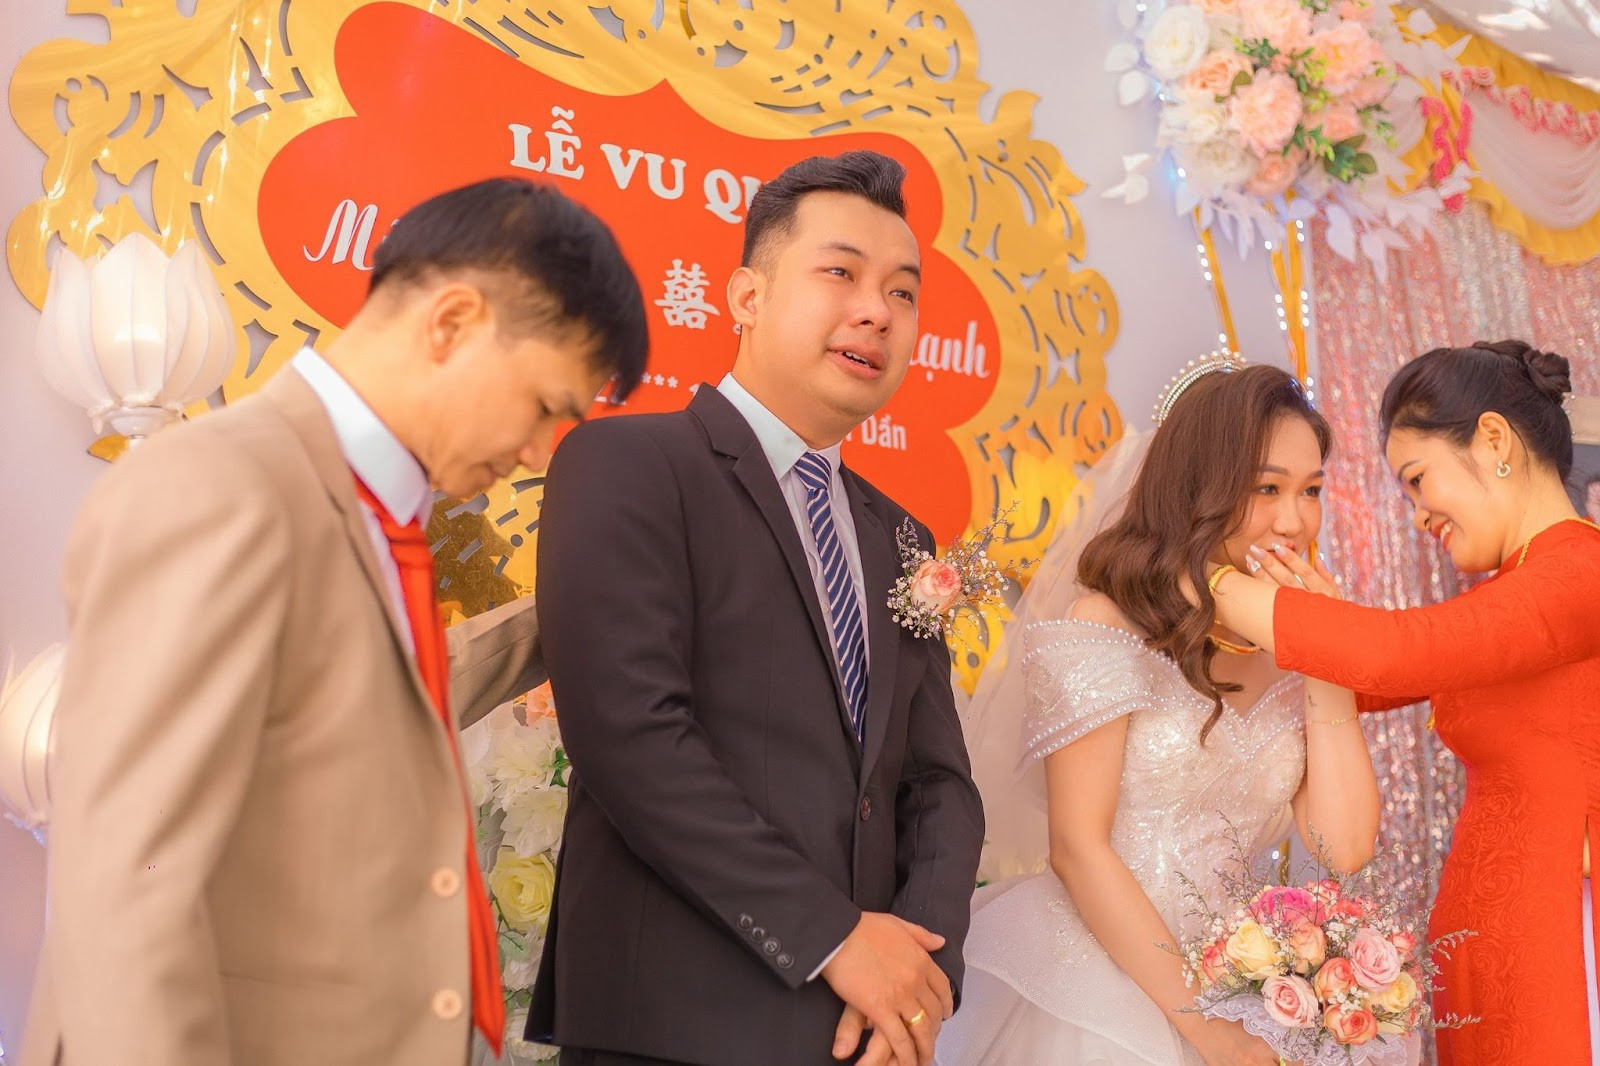 Chú rể bật khóc nức nở, nắm chặt tay bố vợ trong đám cưới ở Bắc Giang - 4